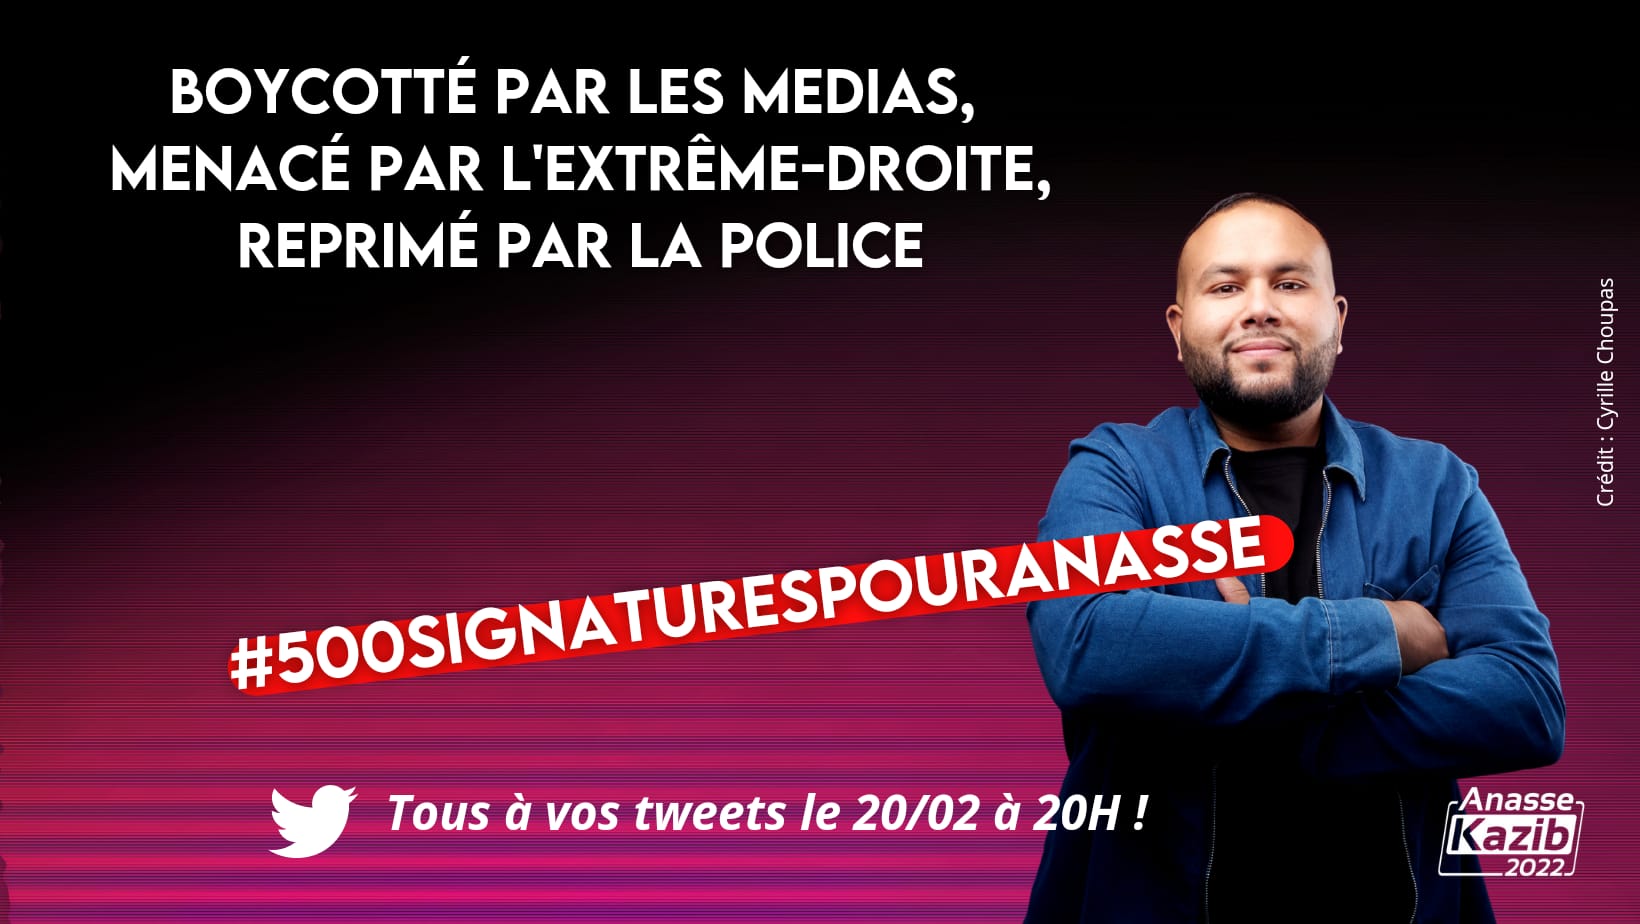 Ce dimanche 20h, tweetons massivement #500SignaturesPourAnasse face au boycott médiatique et aux pressions